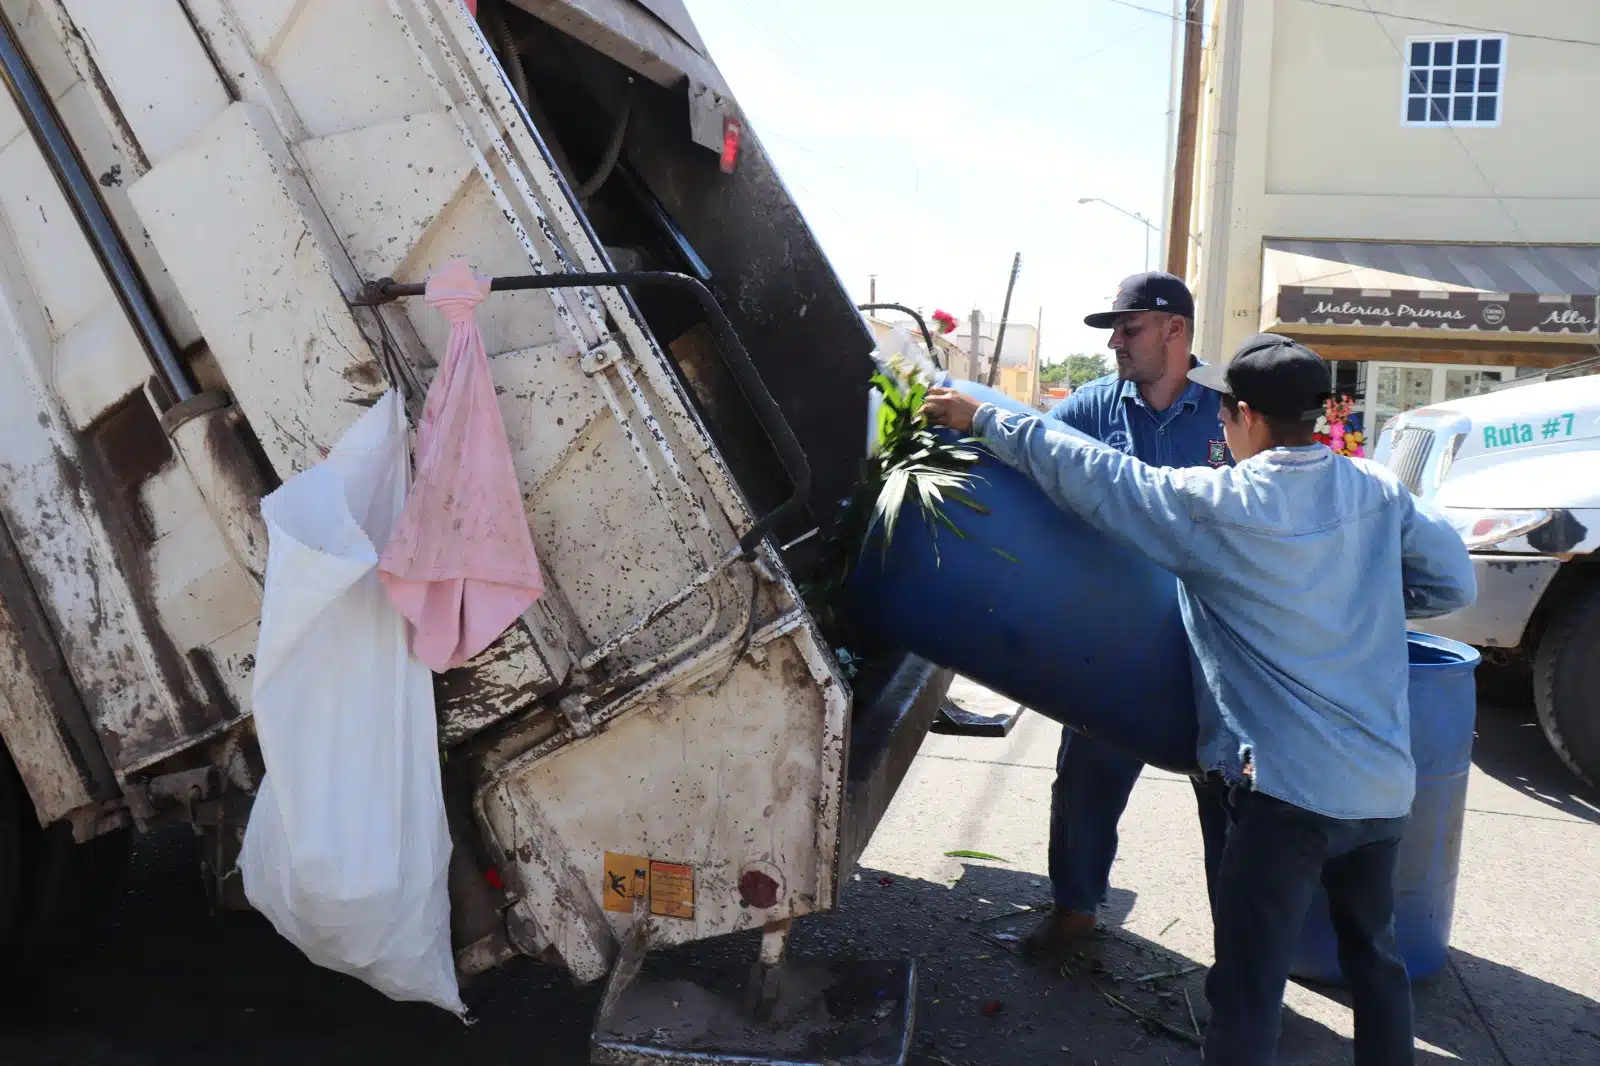 Trabajadores arrojando basura de un bote al camión recolector